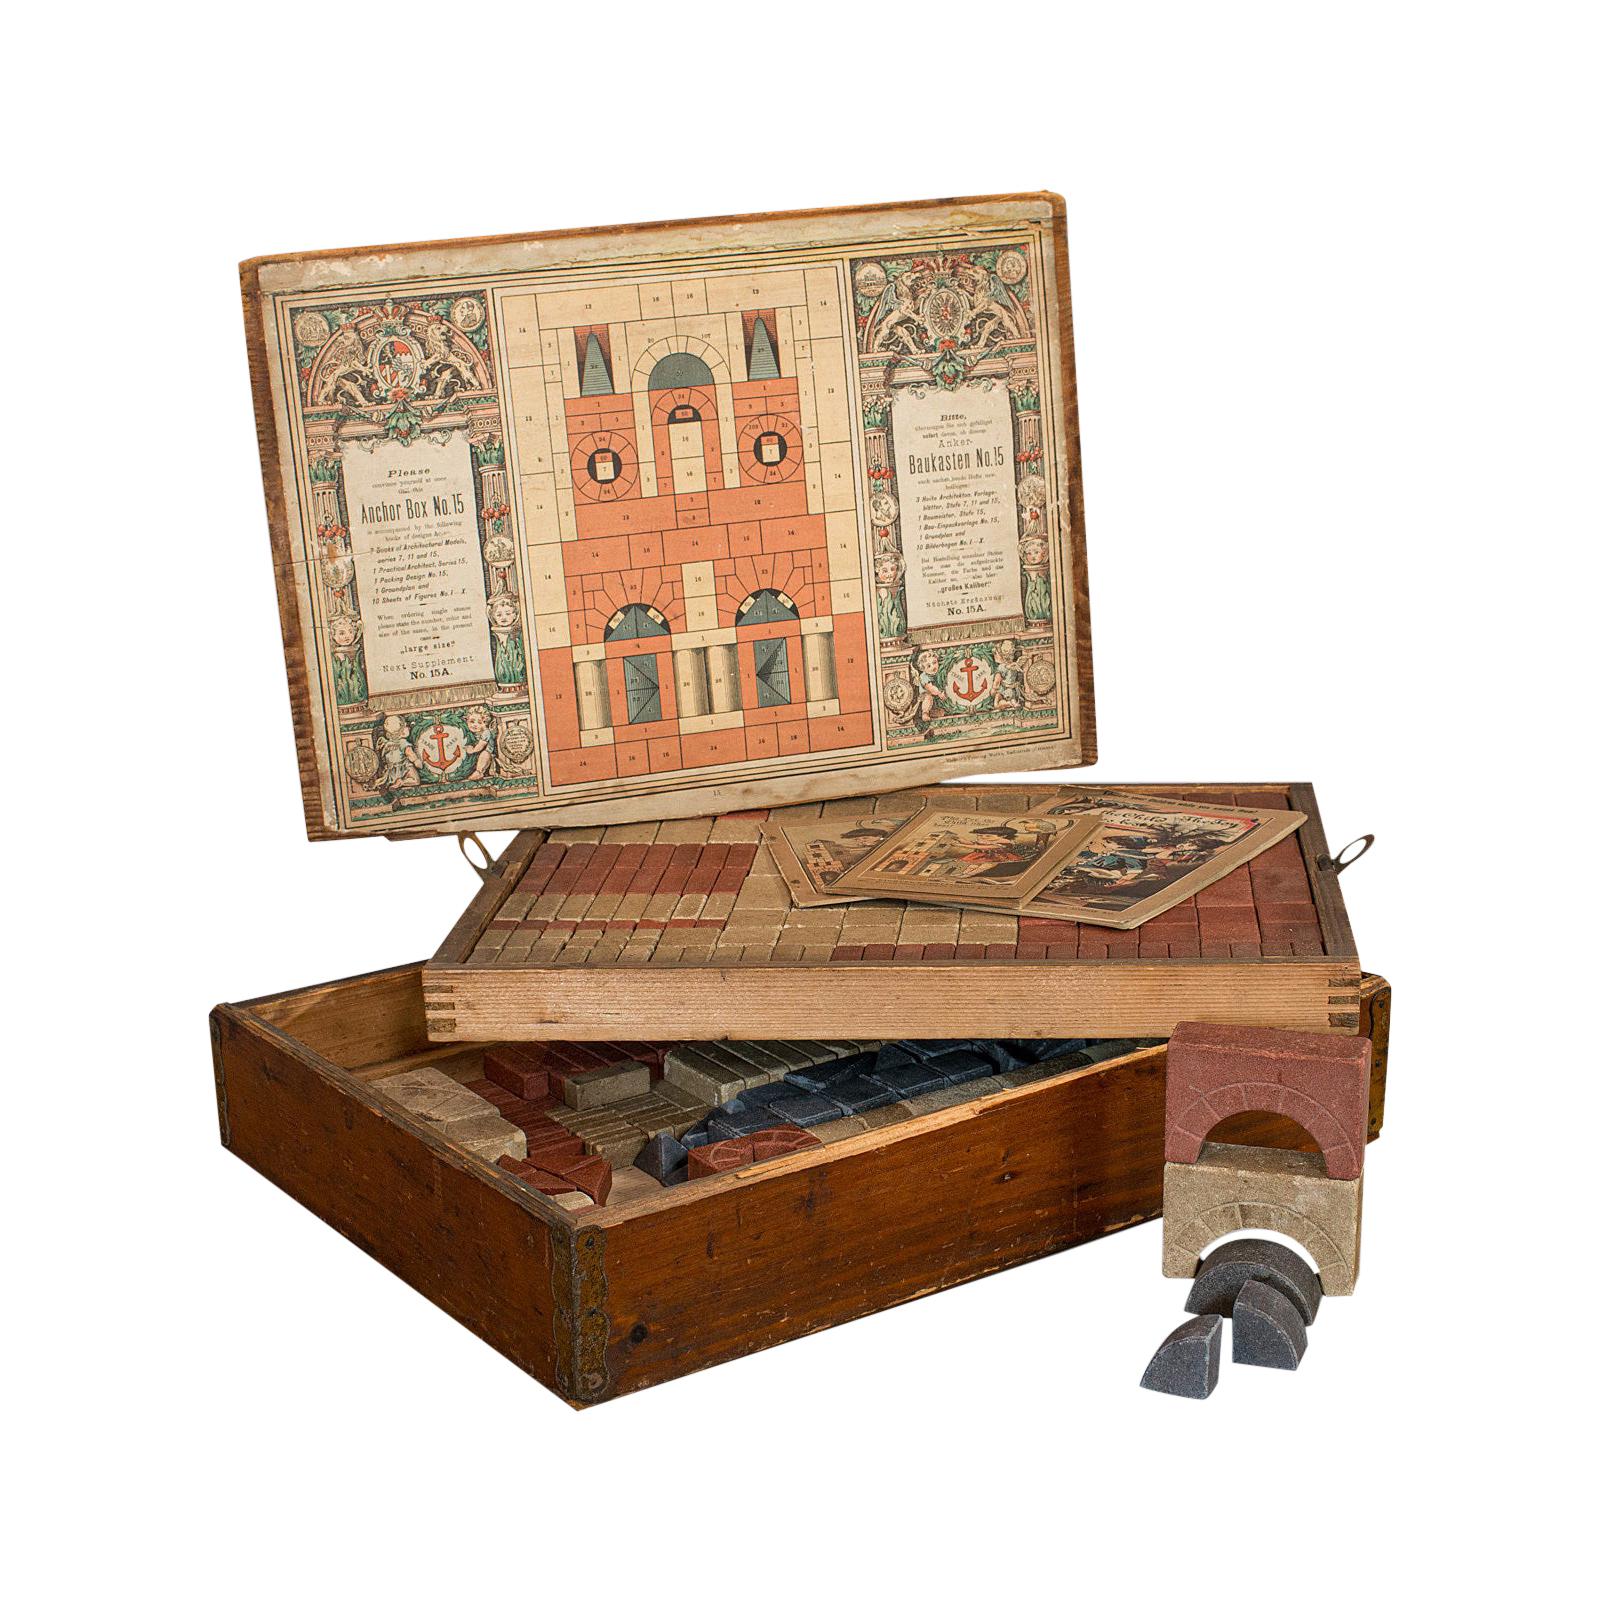 Antique Richter's Anchor Box, German, Stone, Anker Baukasten, Number 15, Set For Sale